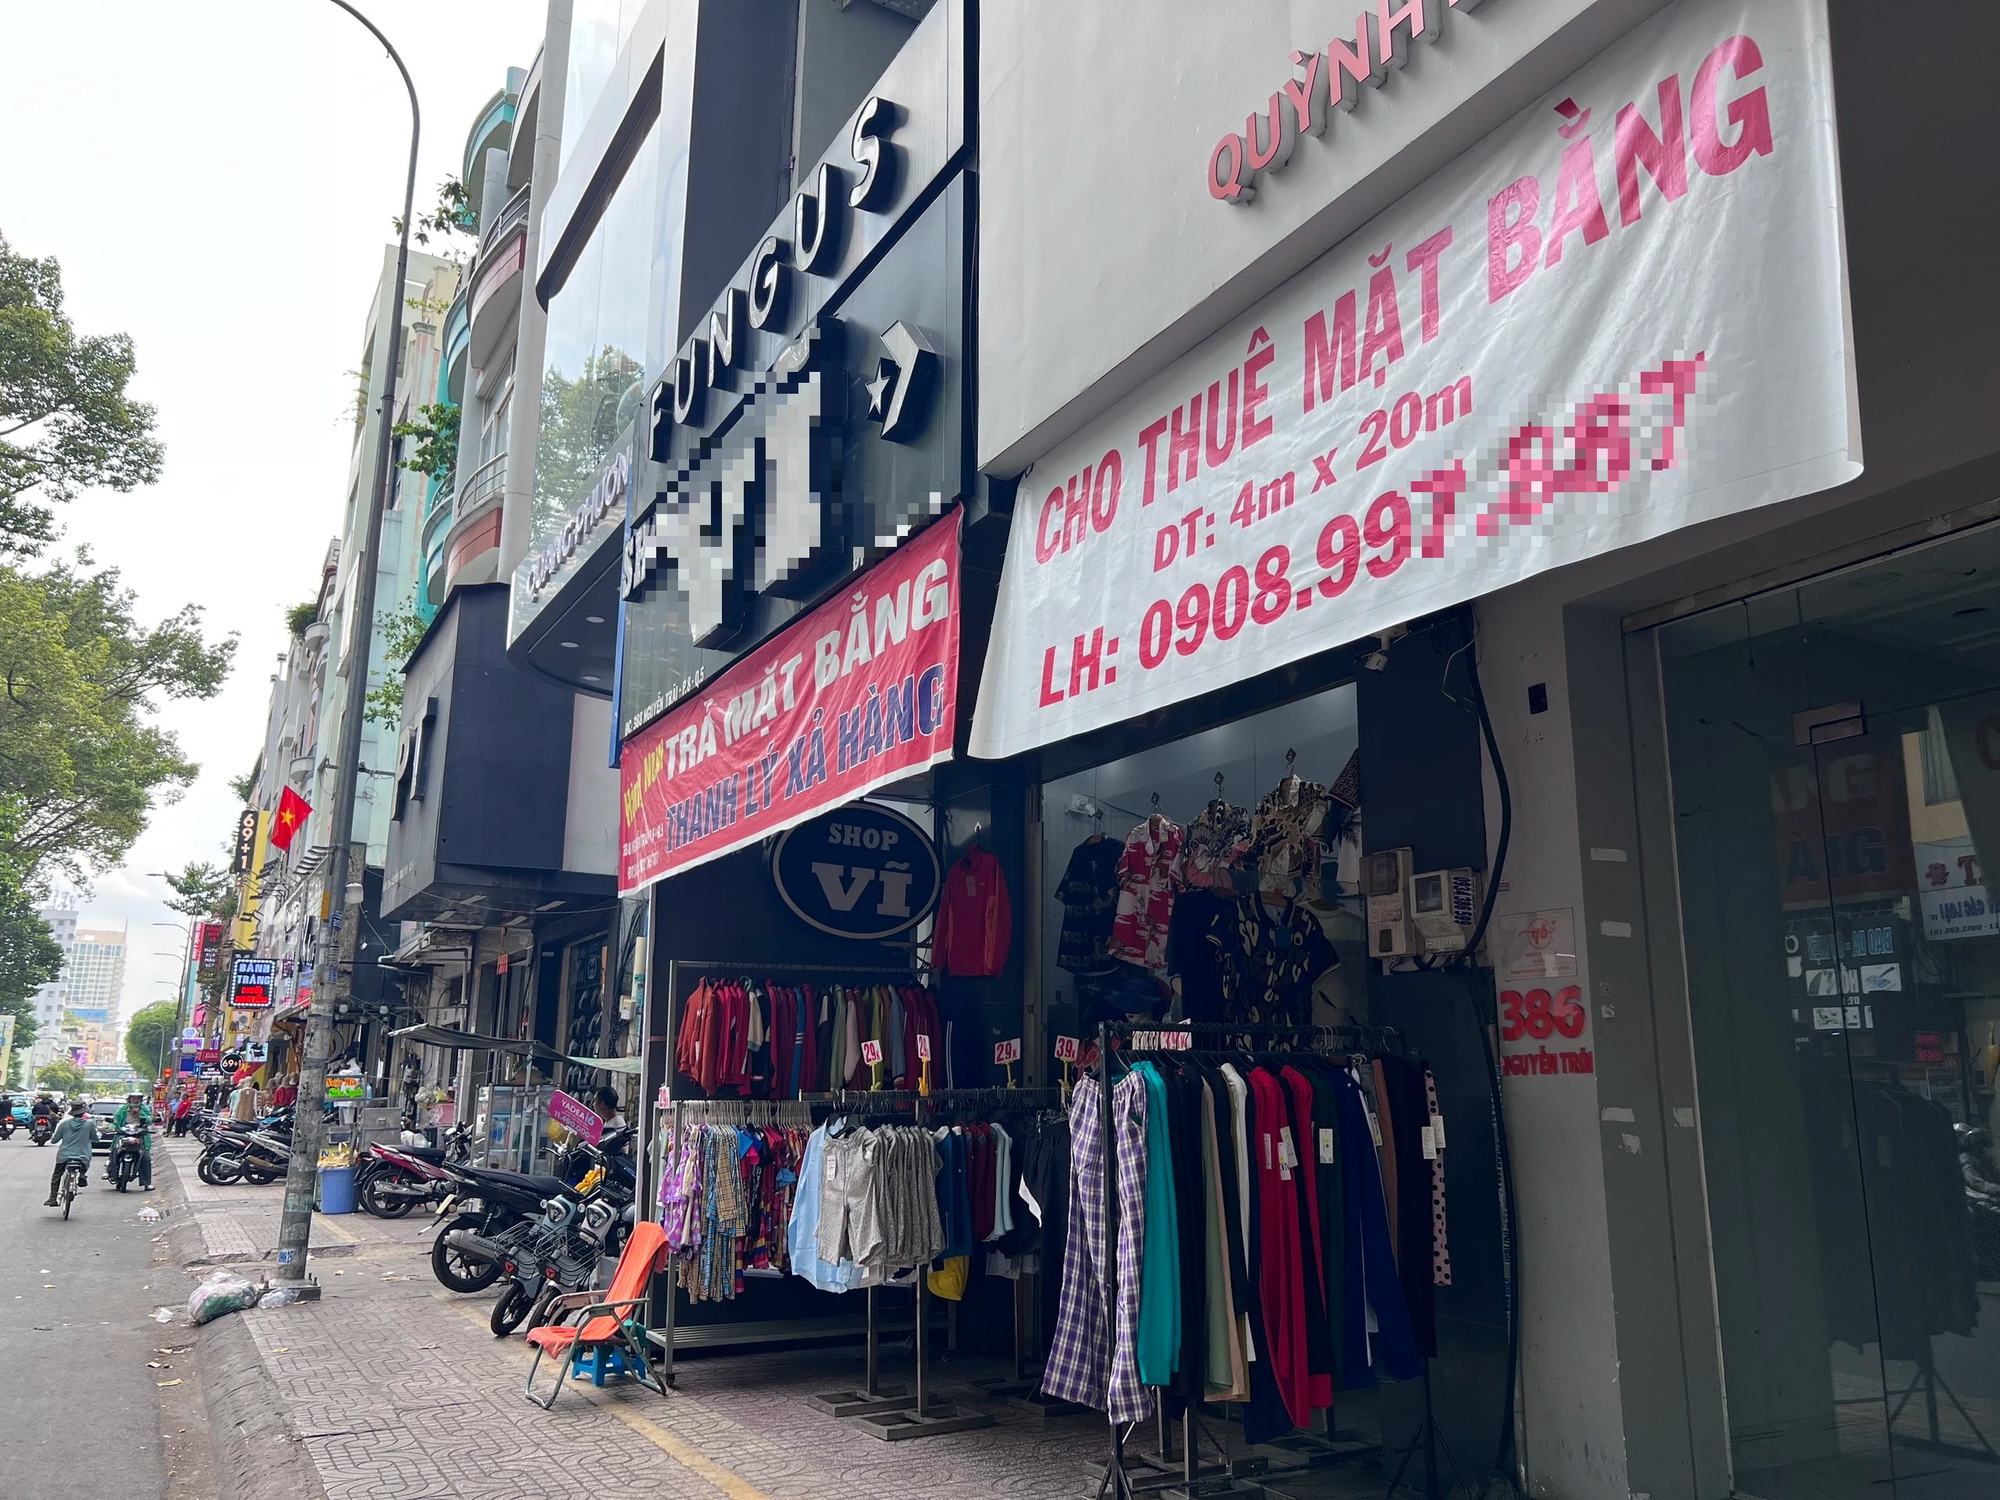 Ở phố thời trang Nguyễn Trãi, bên cạnh một cửa hàng đã dán bảng cho thuê là shop thời trang đang thanh lý để chuẩn bị trả mặt bằng